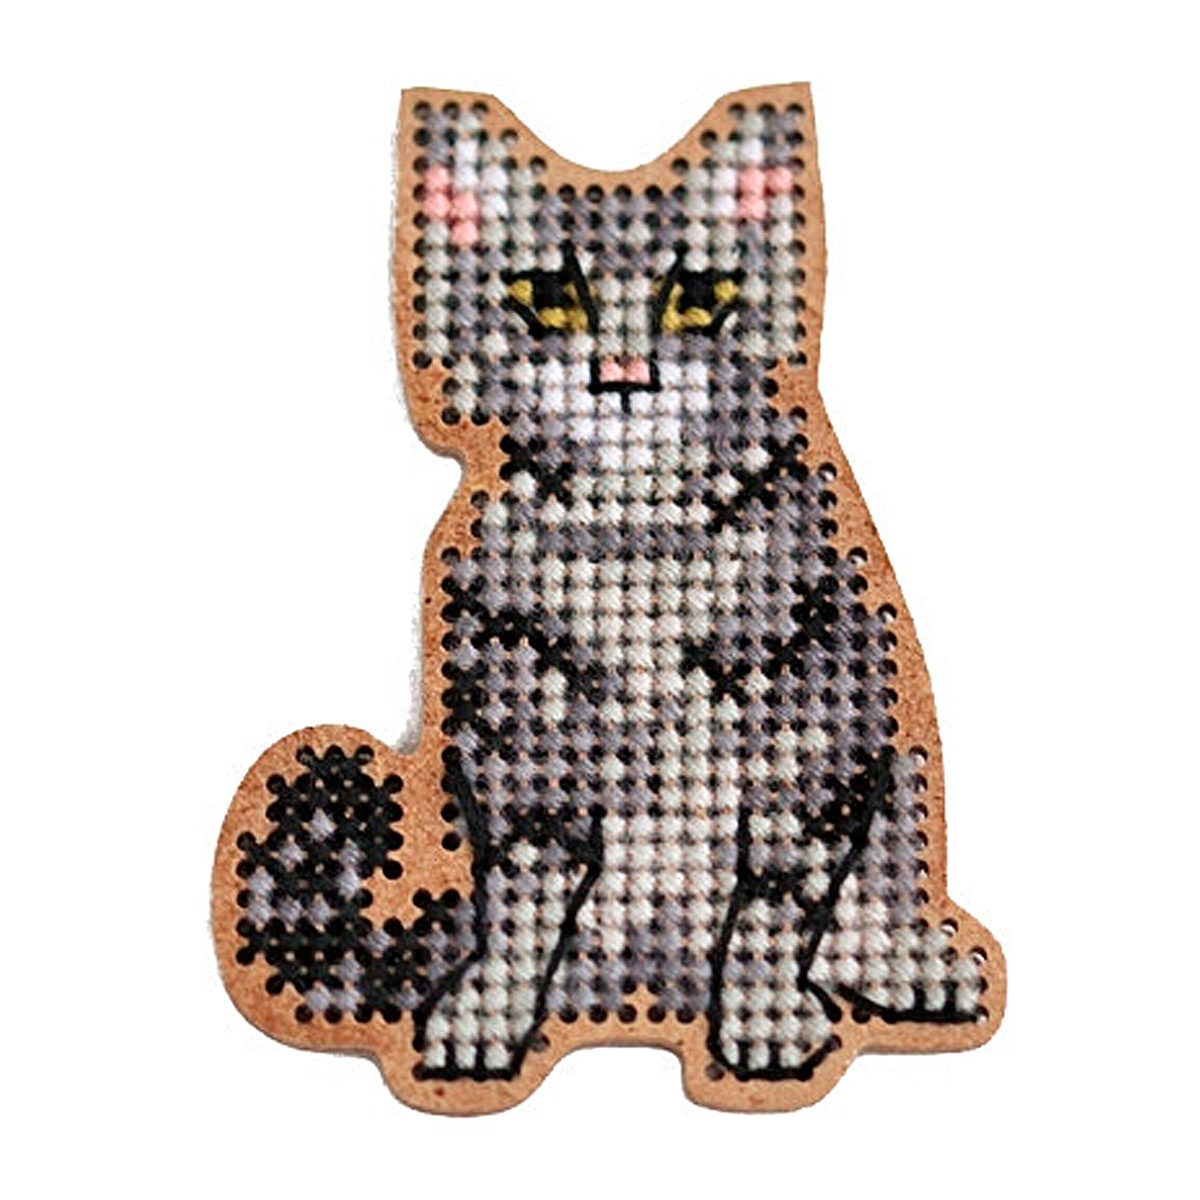 Gray Kitten Brooch Cross Stitch Kit фото 1